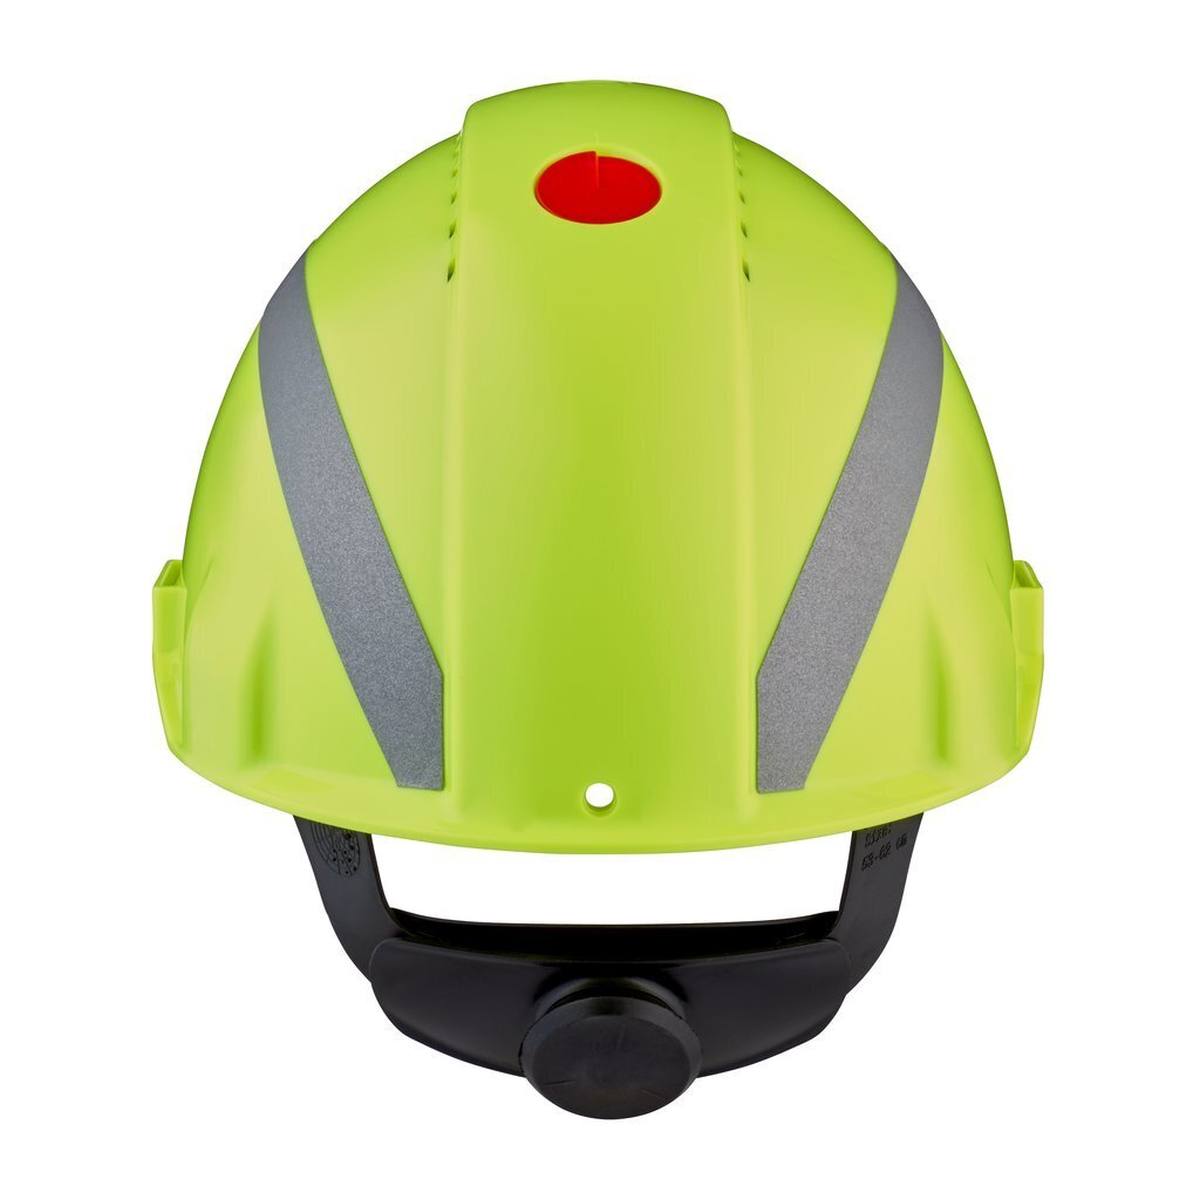 3M G3000 Schutzhelm mit UV-Indikator, neongrün, ABS, belüftet Ratschenverschluss, Kunststoffschweißband, Reflex-Aufkleber